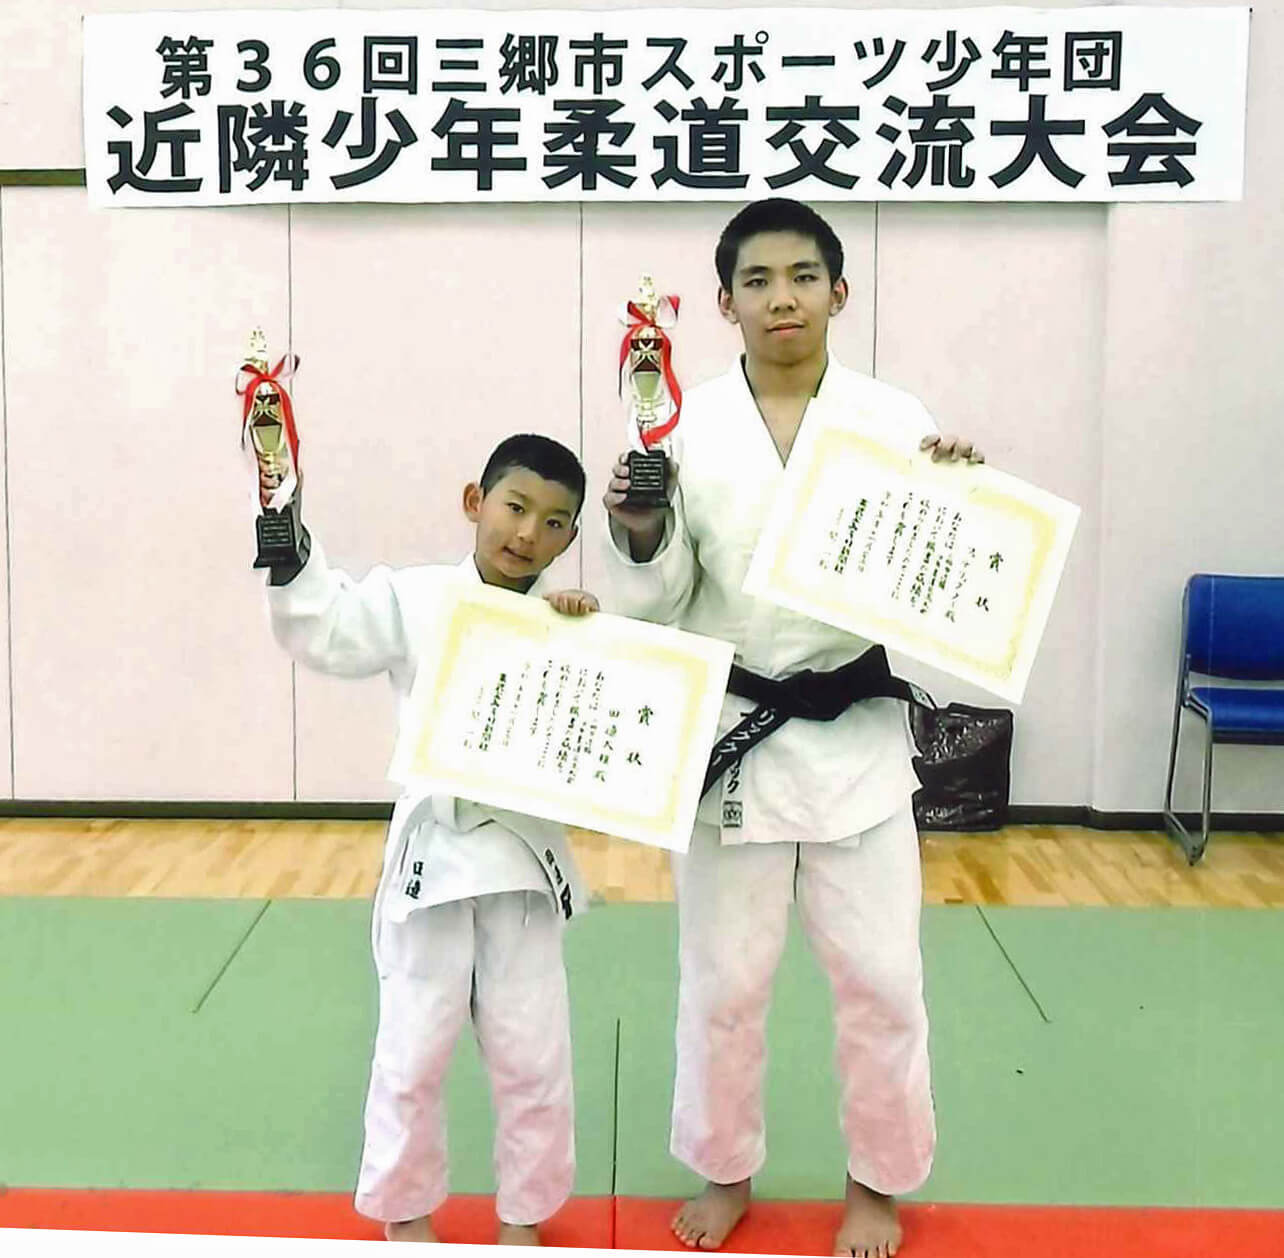 東武よみうり新聞社賞を受賞した田邊選手とフェデリック・クー選手